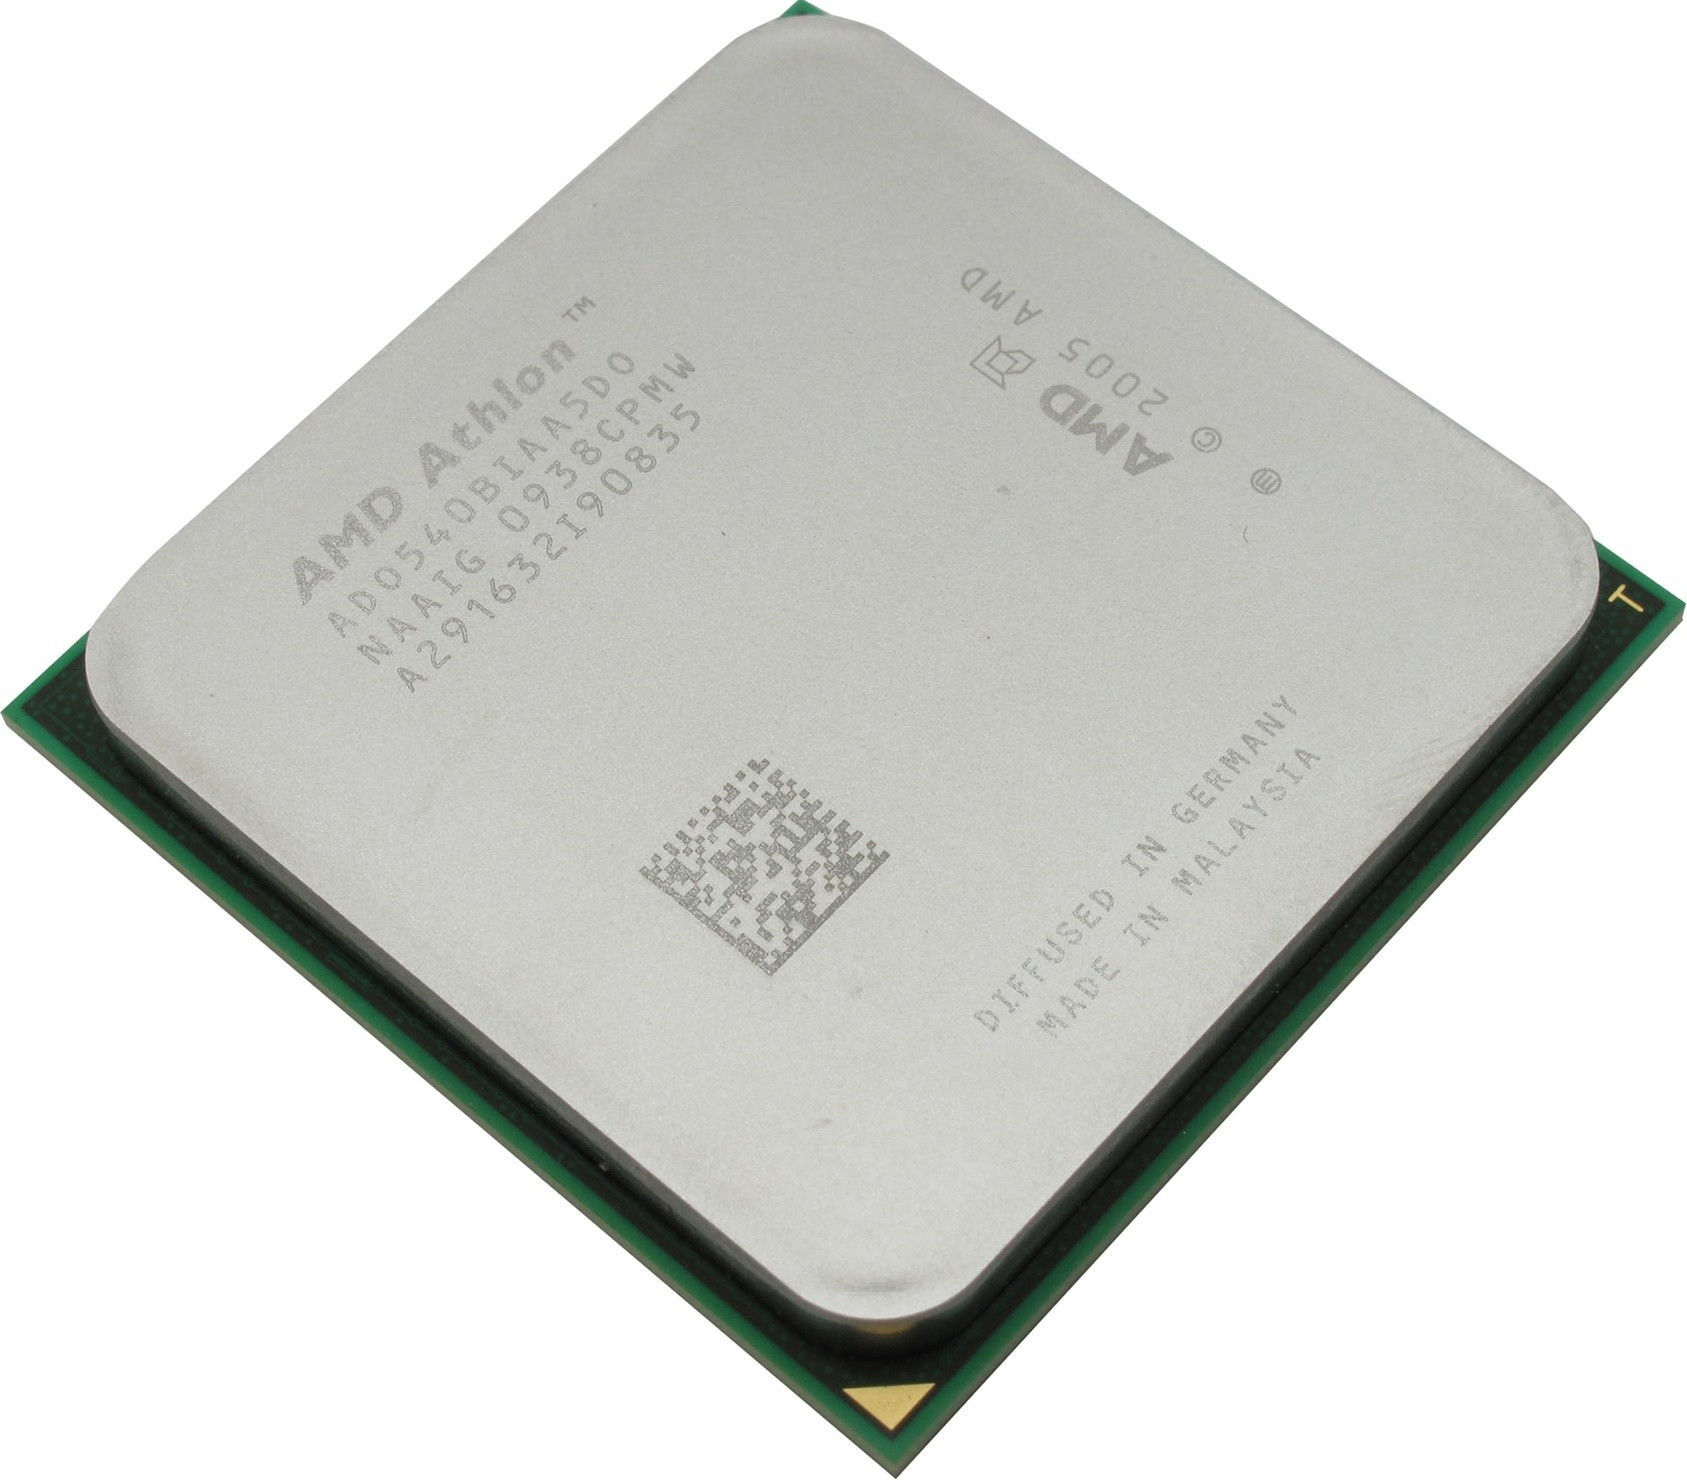 Phenom x6 1065t. AMD Phenom II x6 1075t. Процессор AMD Phenom II x6 Thuban 1075t. Sempron x2 2300 (g2). AMD Phenom(TM) II x6 1075t Processor 3.00 GHZ.